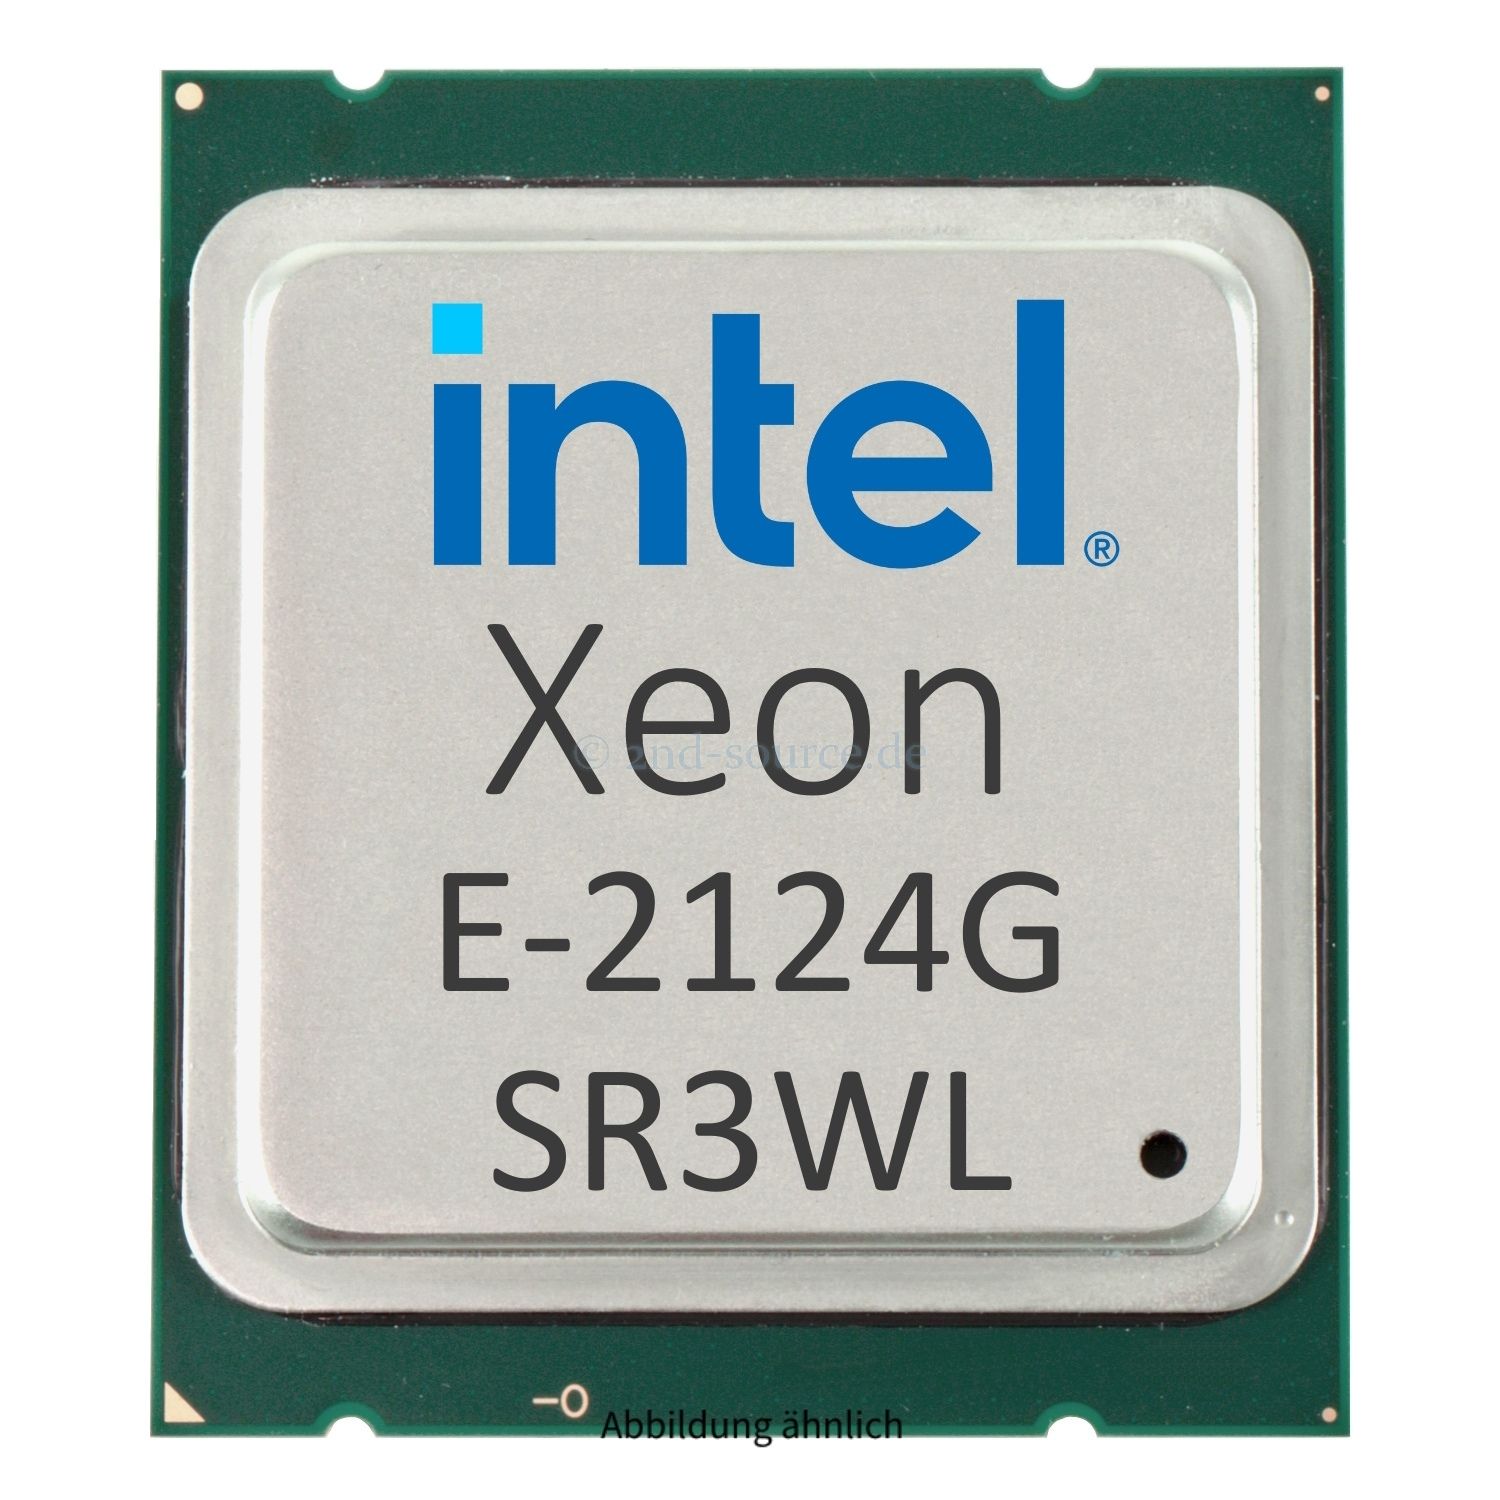 Intel Xeon E-2124G 3.40GHz 8MB 4-Core CPU 71W SR3WL CM8064401544801